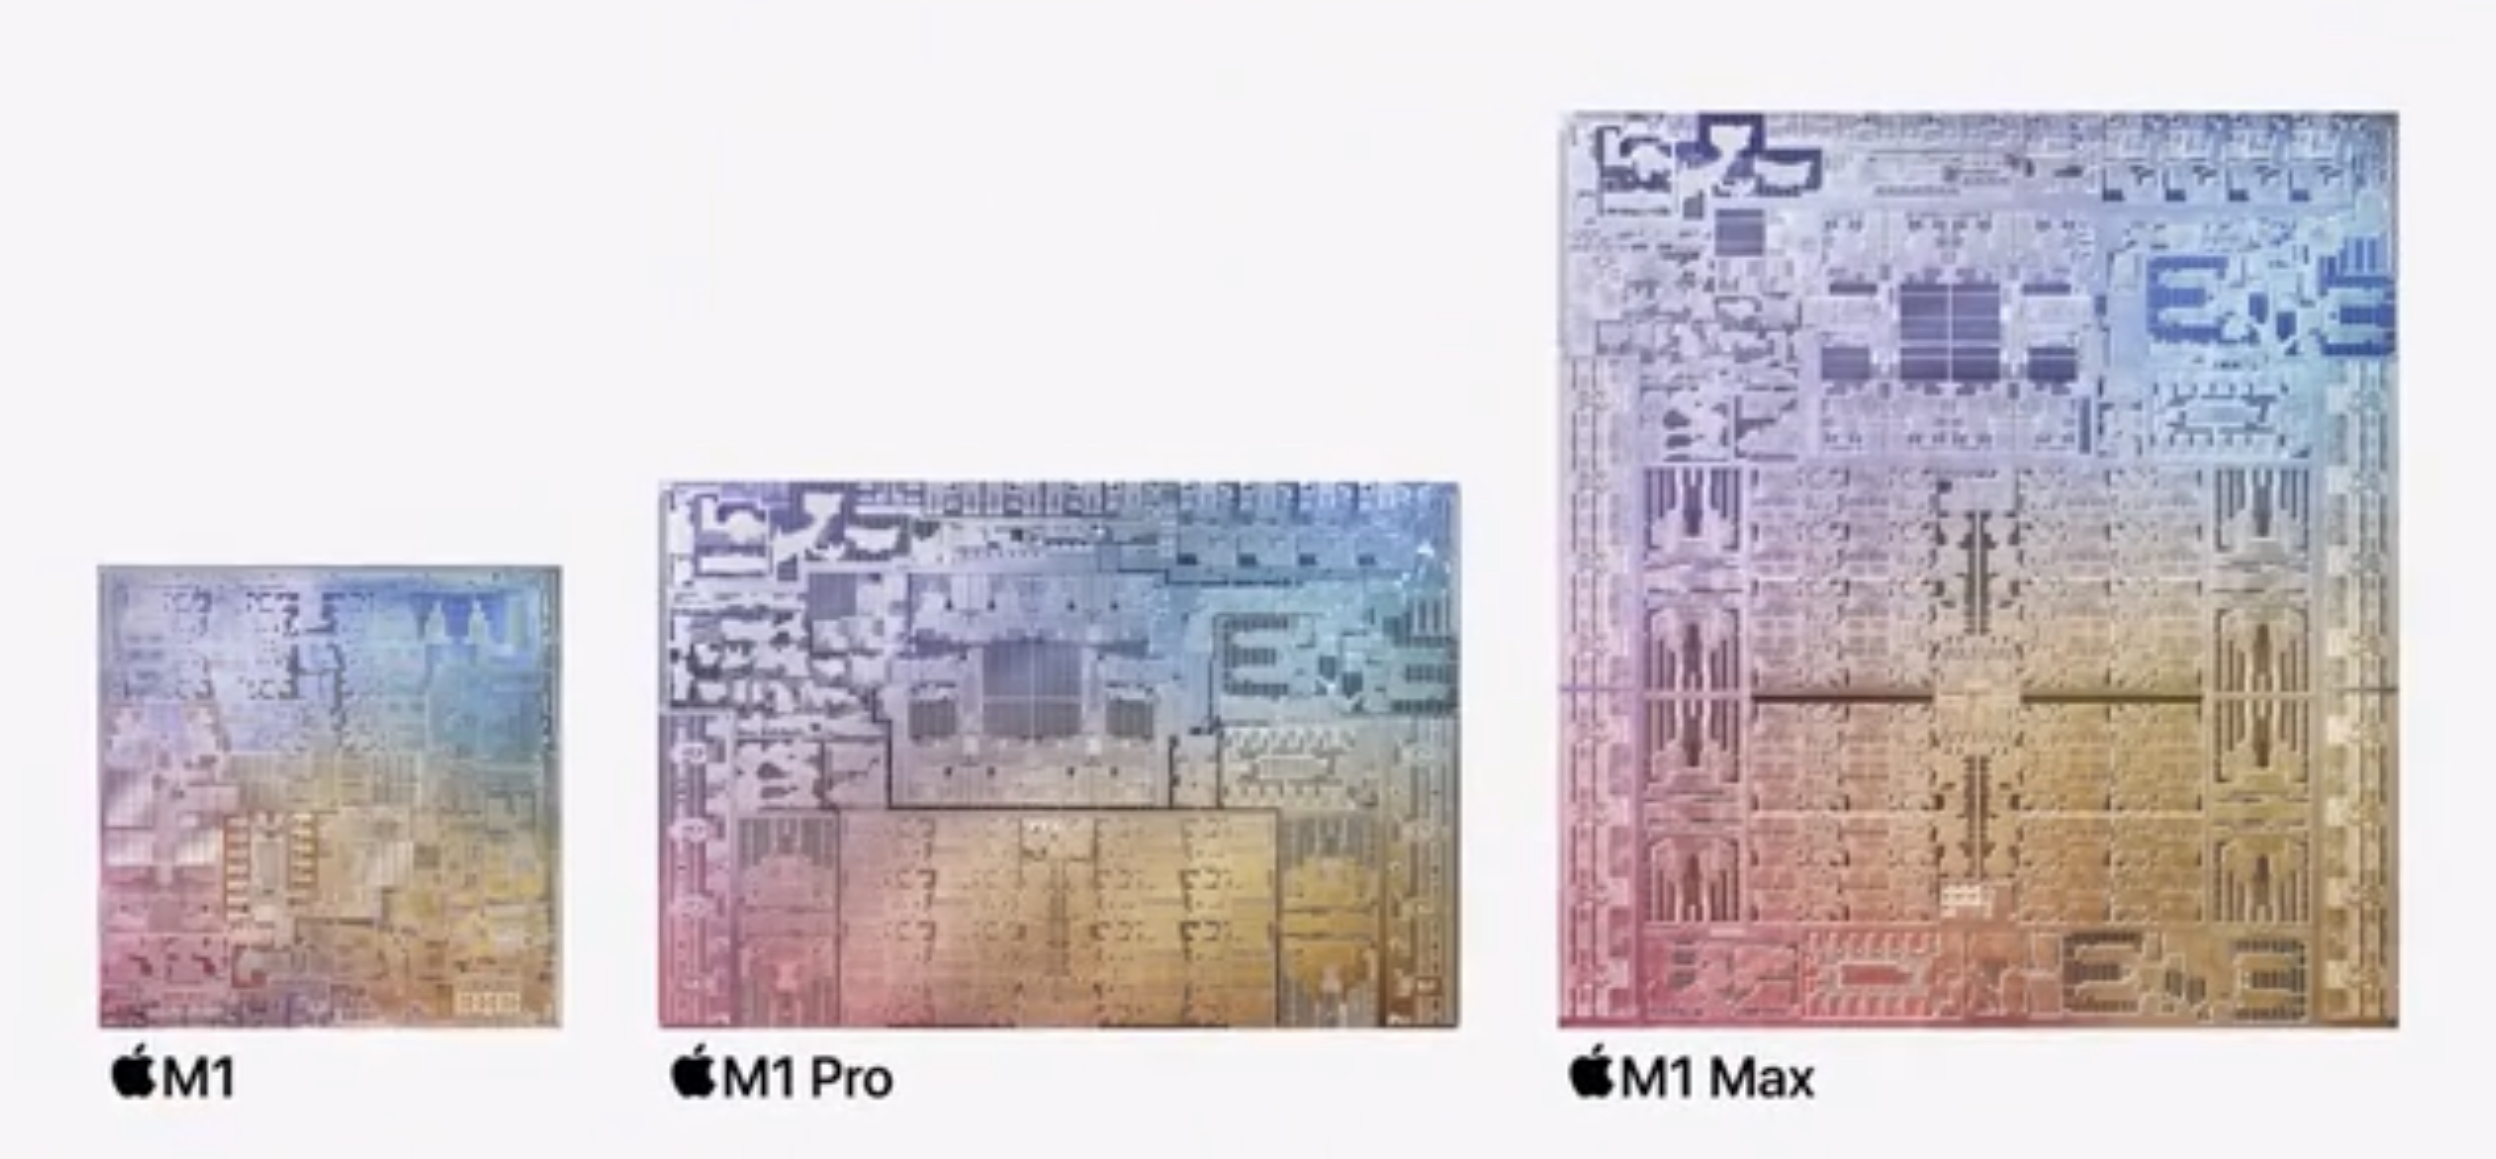 Tamaños de die del M1, M1 Pro y M1 Max, comparados